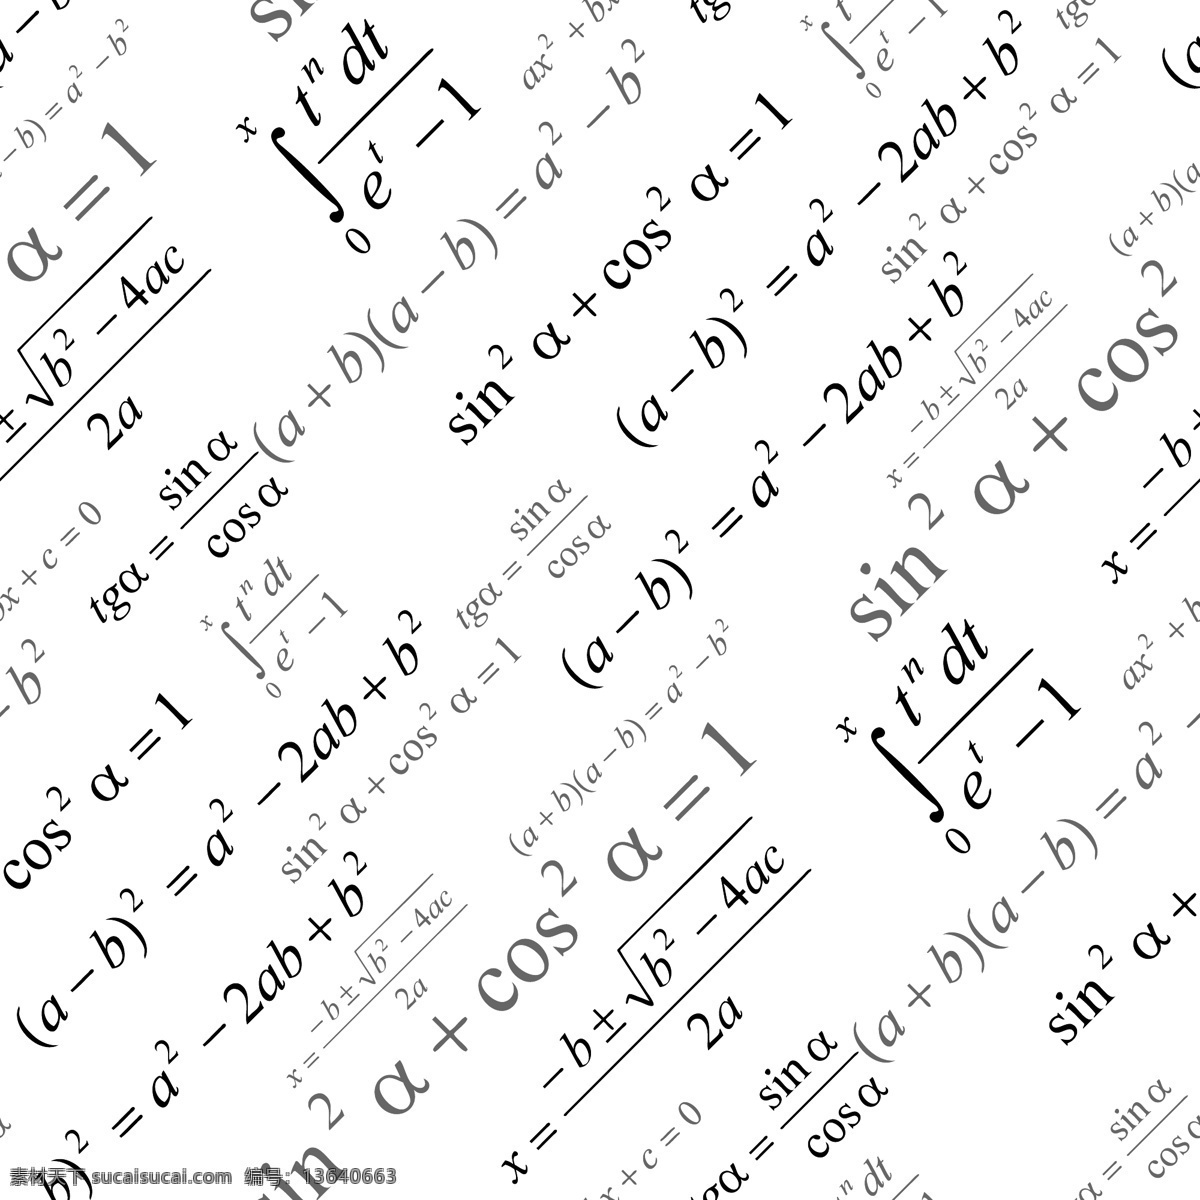 数学公式 化学式 化学符号 算术 方程式 计算 符号 科学公式 无缝模式 数字 手绘图案符号 数学题 分子结构图 微积分 背景 底纹 矢量 底纹背景 底纹边框